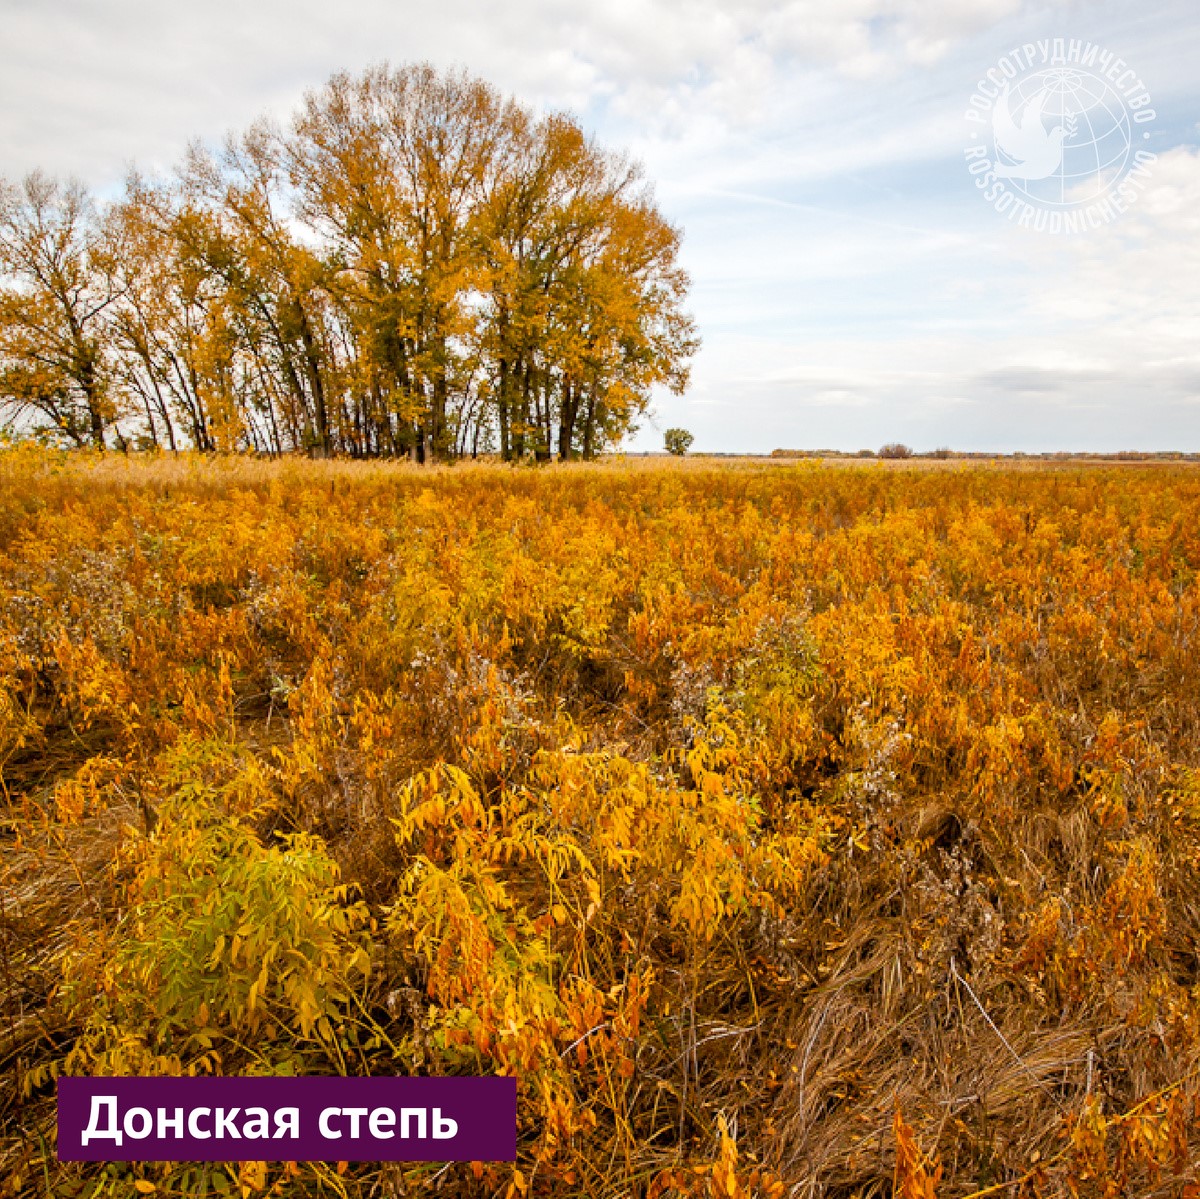 Волгоградская область – это бескрайние степи, высокие речные...